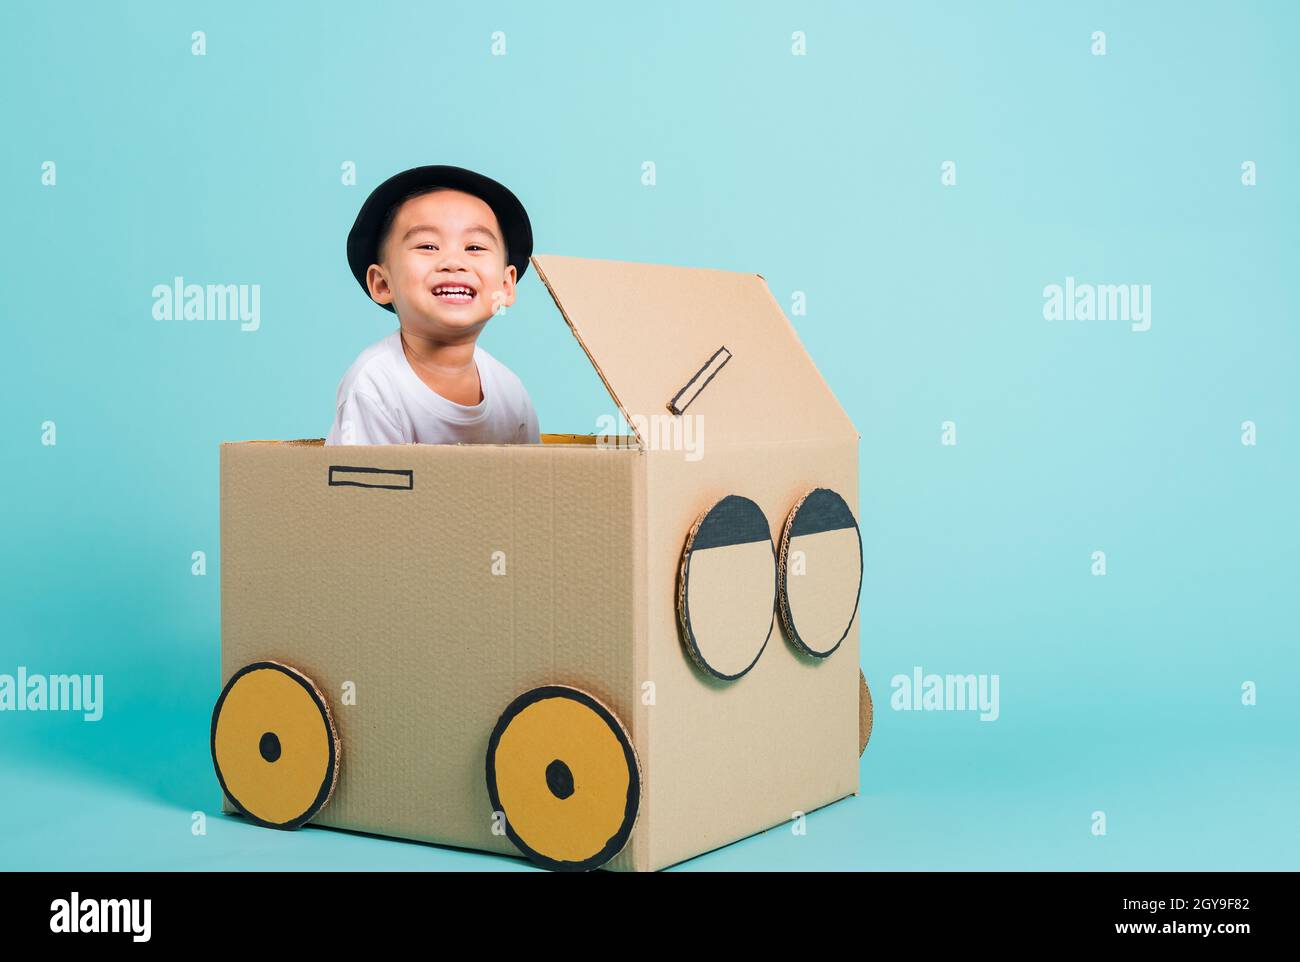 Fröhliche asiatische Kinder Junge lächeln beim Fahren Spielauto kreativ durch eine Pappkartonvorstellung, Sommerferienreisekonzept, Studio auf blauem Backgrot gedreht Stockfoto